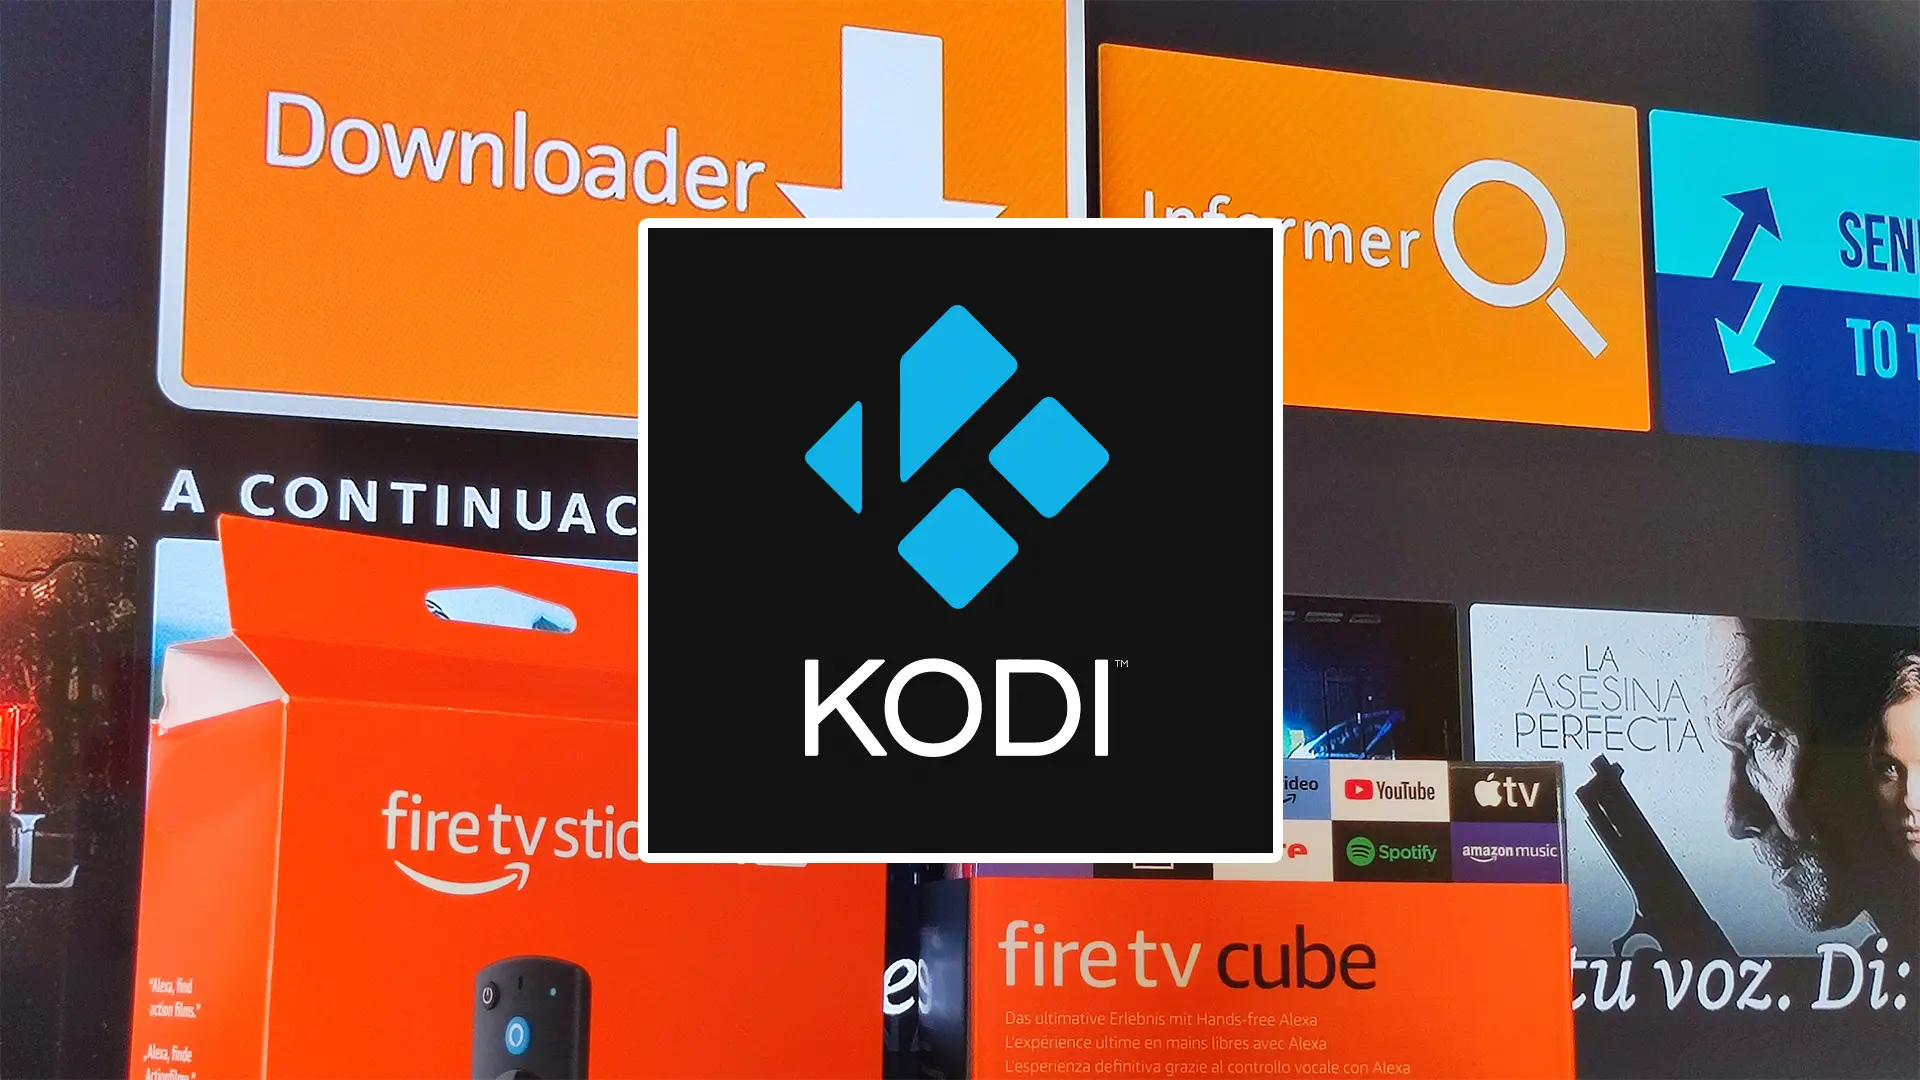 Instala Kodi en Fire TV vía Downloader con esta guía fácil al streaming sin límites